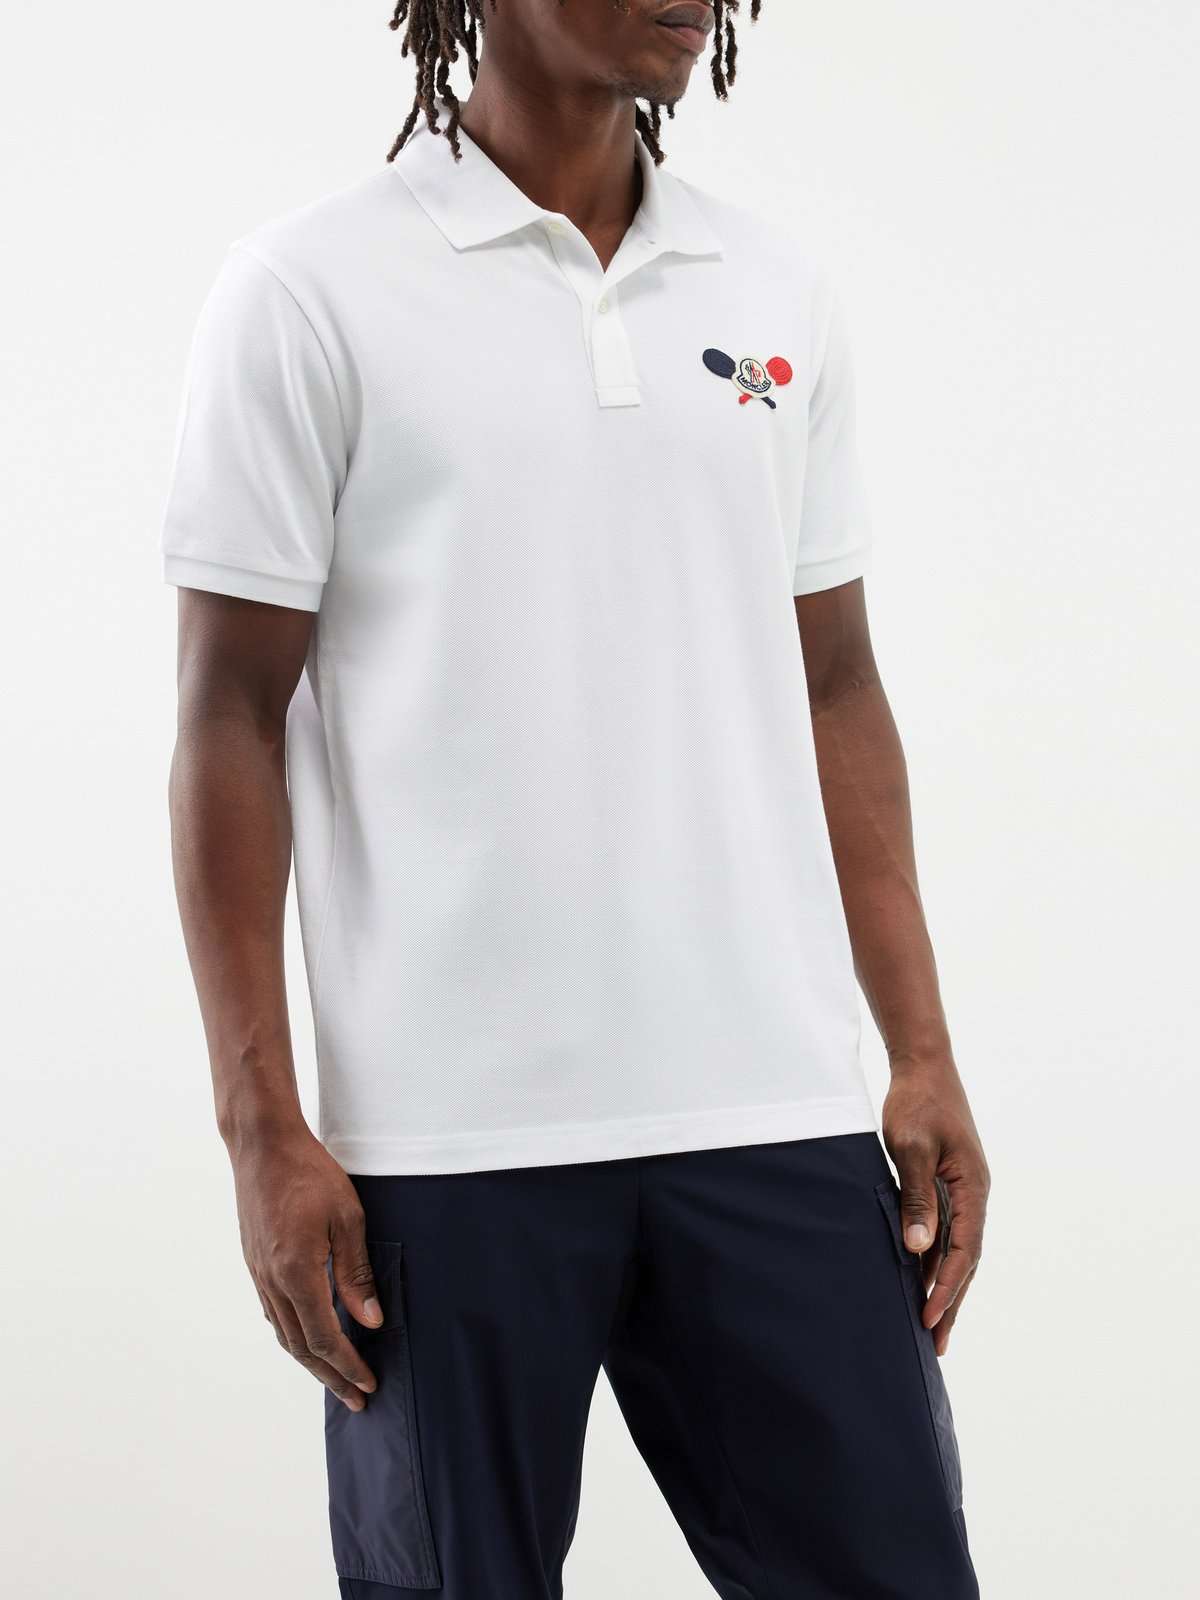 рубашка-поло из хлопкового пике с вышитым логотипом Tennis